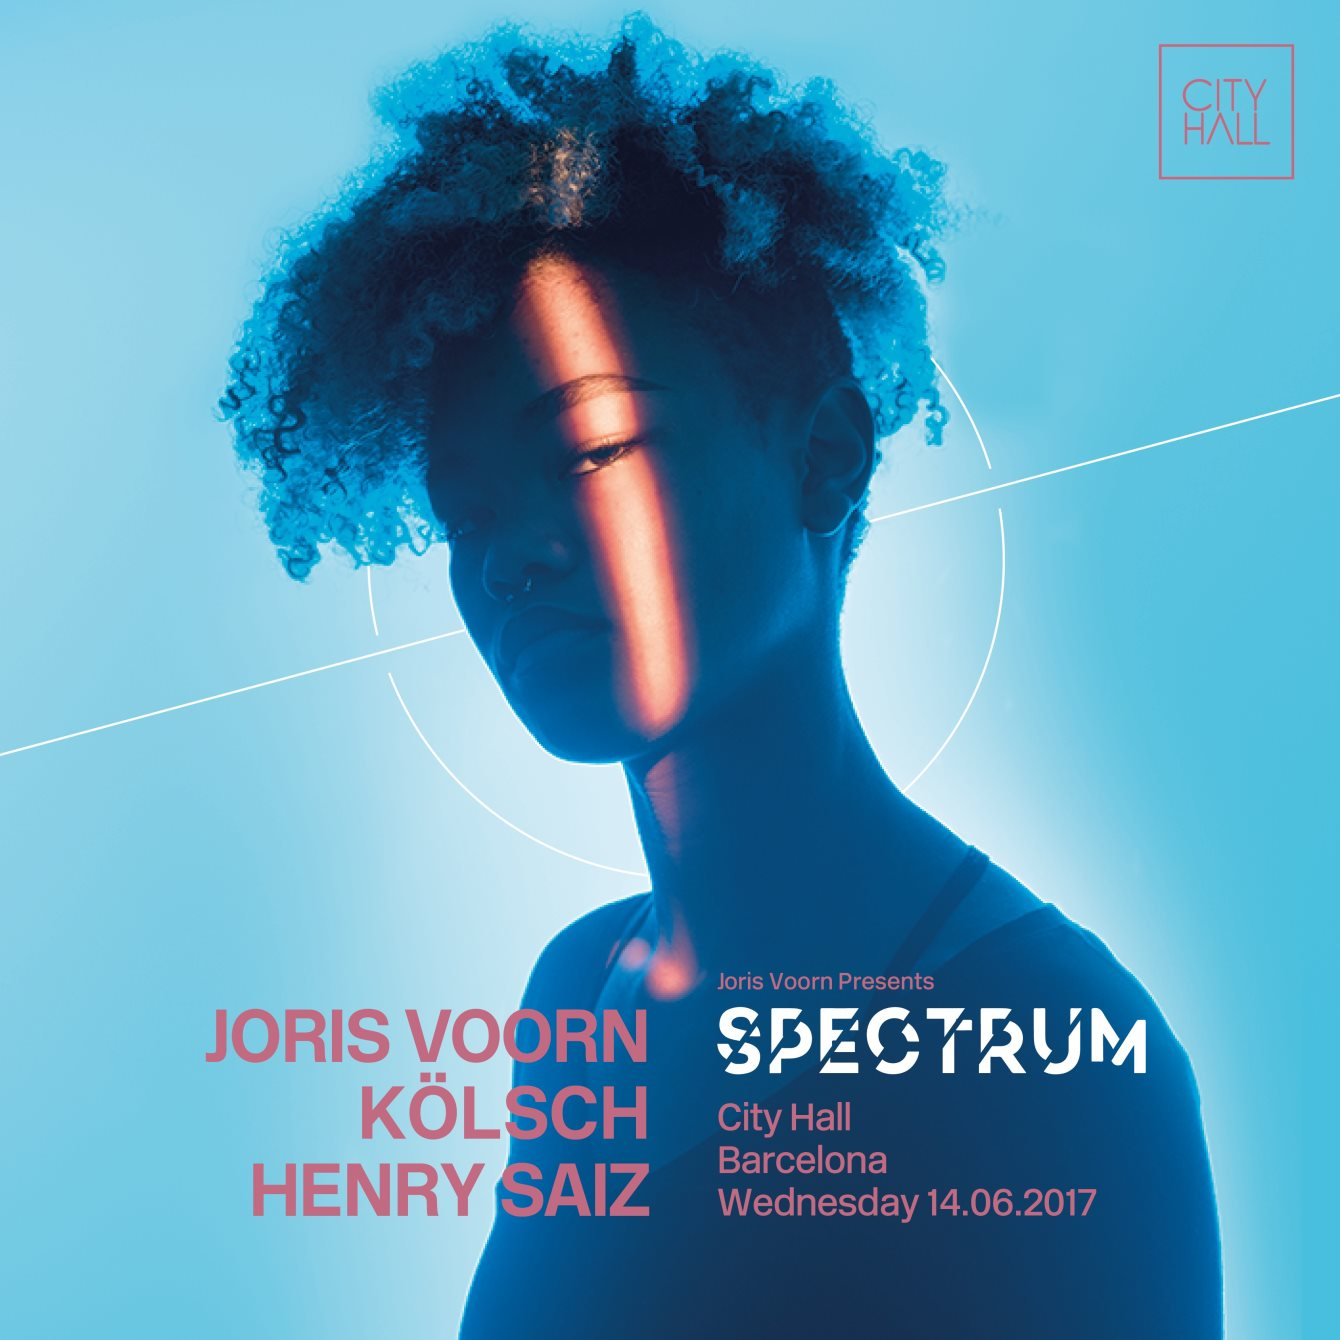 Joris Voorn presents Spectrum - Barcelona - Flyer front